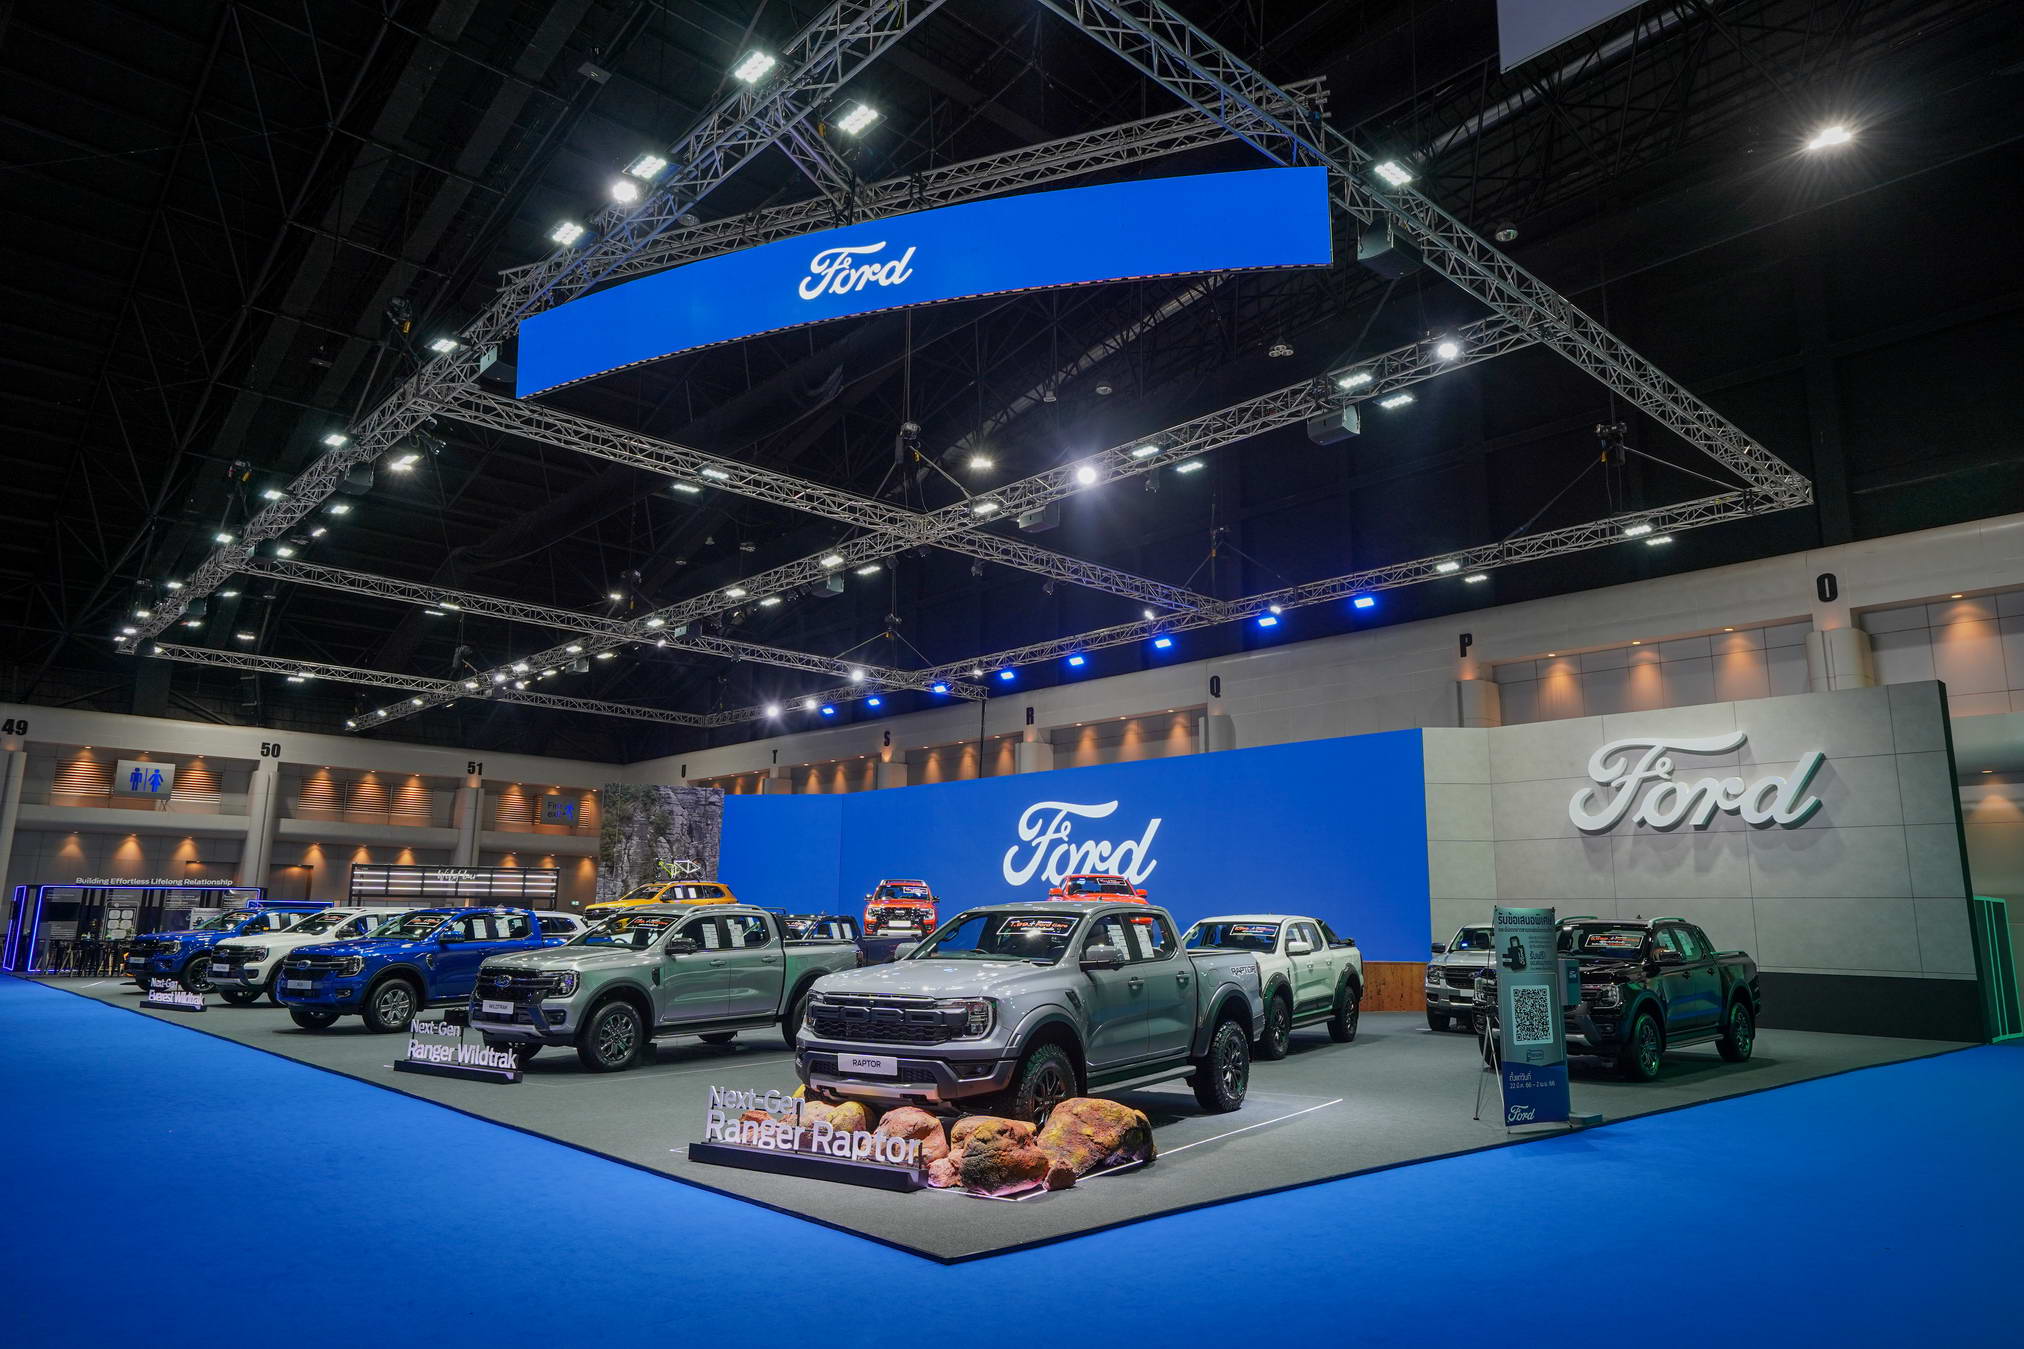 A Ford ismét újradefiniálja a teherautó-szegmenst a 2023-as Bangkoki Nemzetközi Autószalonon